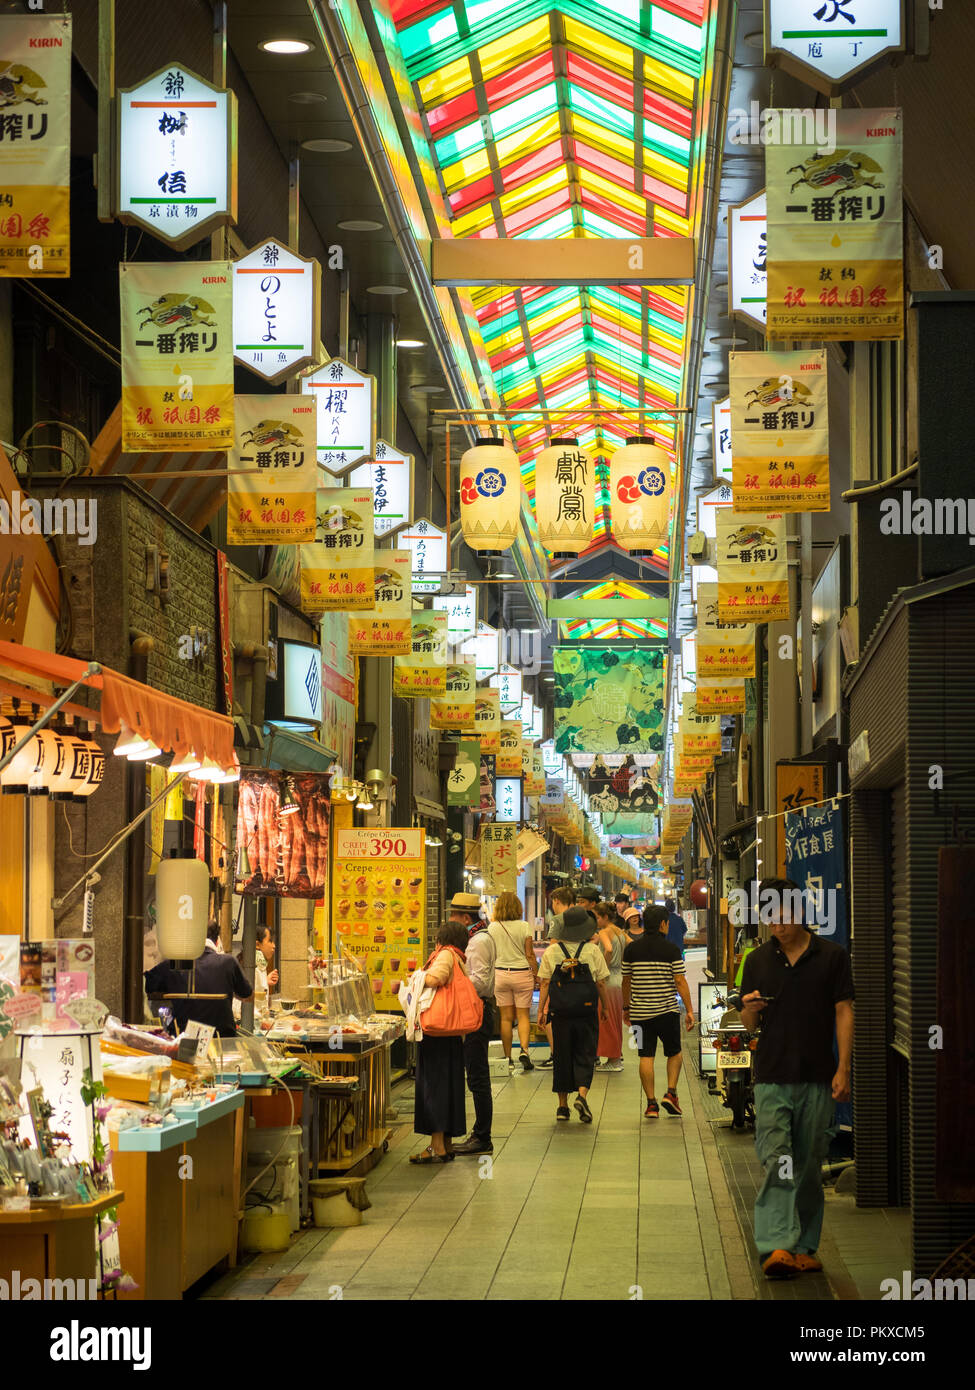 Eine Ansicht von Nishiki Markt (錦市場 Nishiki Ichiba), einer fünf Blocks langen Markt', in Kyoto Küche in der Innenstadt von Kyoto, Japan bekannt. Stockfoto